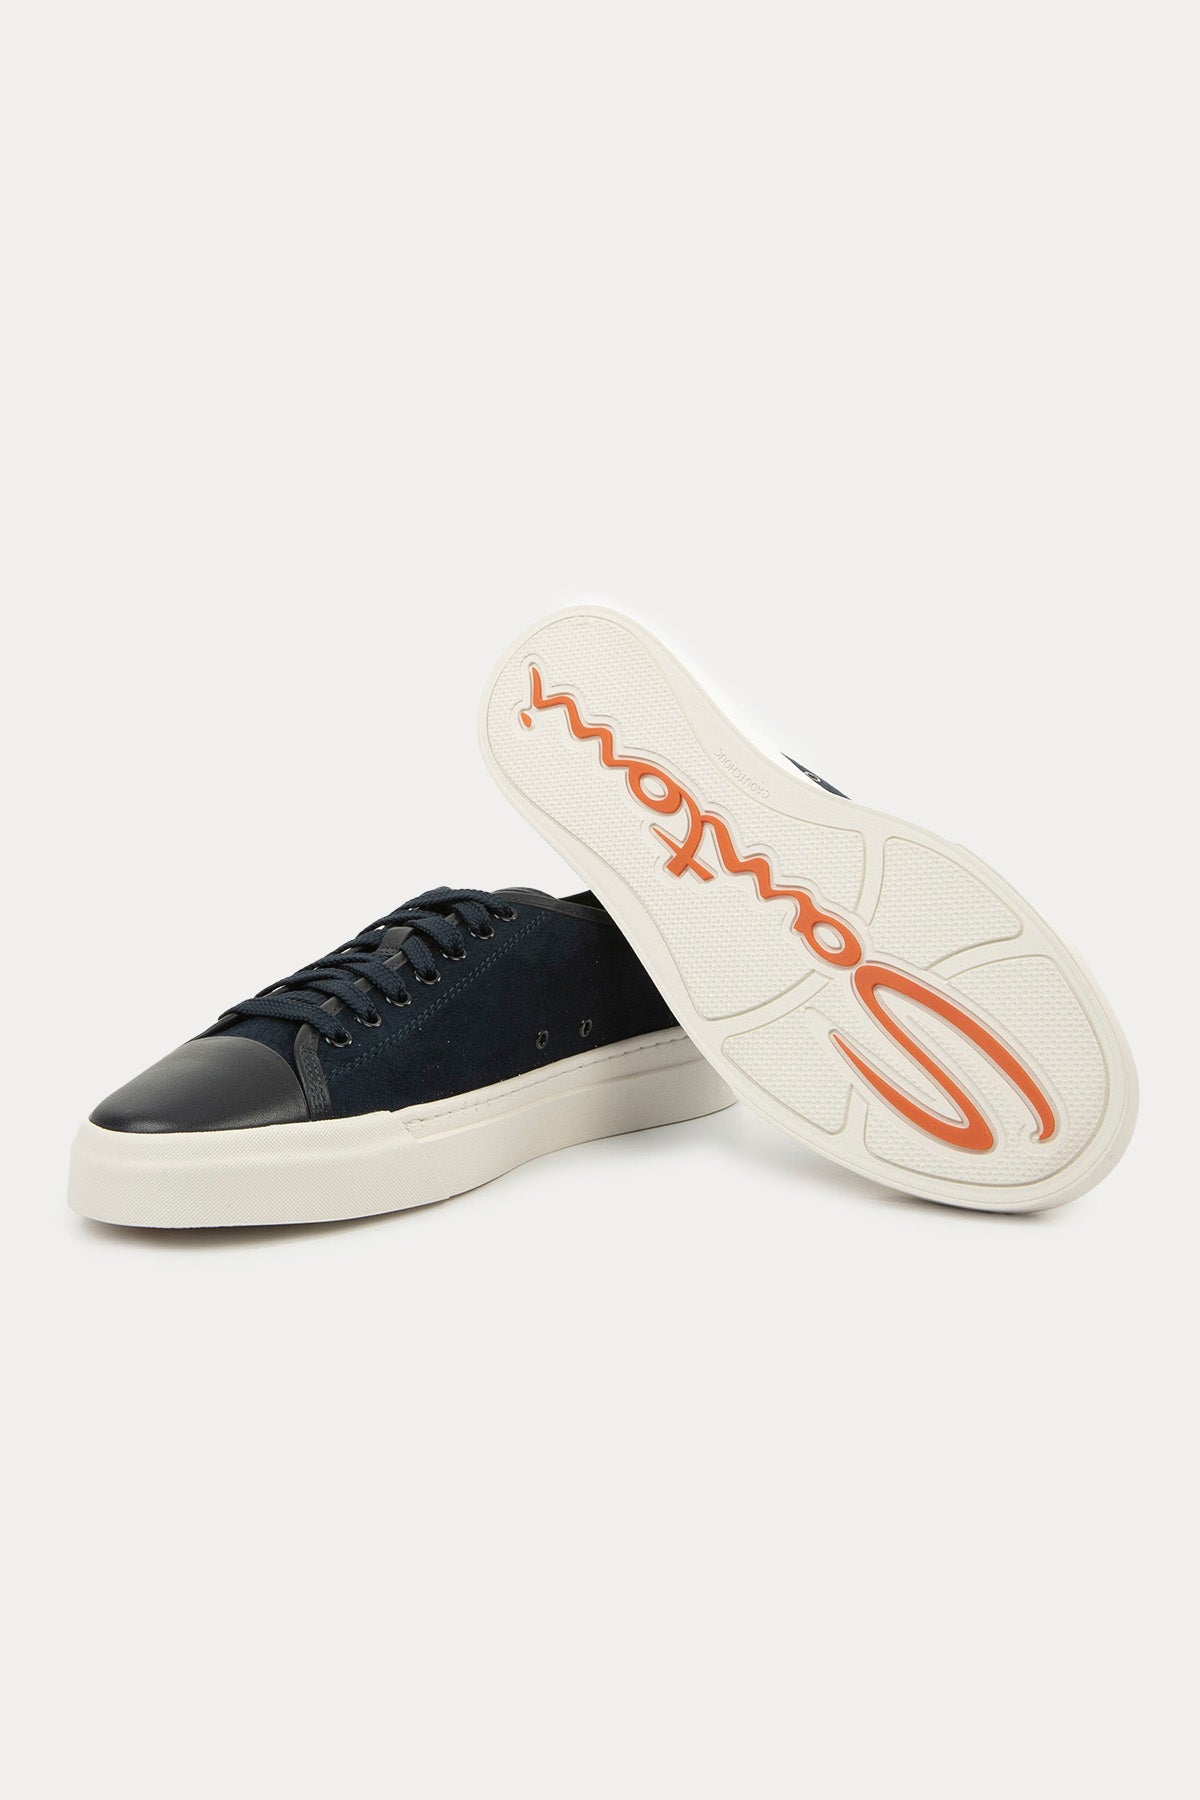 Santoni Deri Detaylı Süet Sneaker Ayakkabı